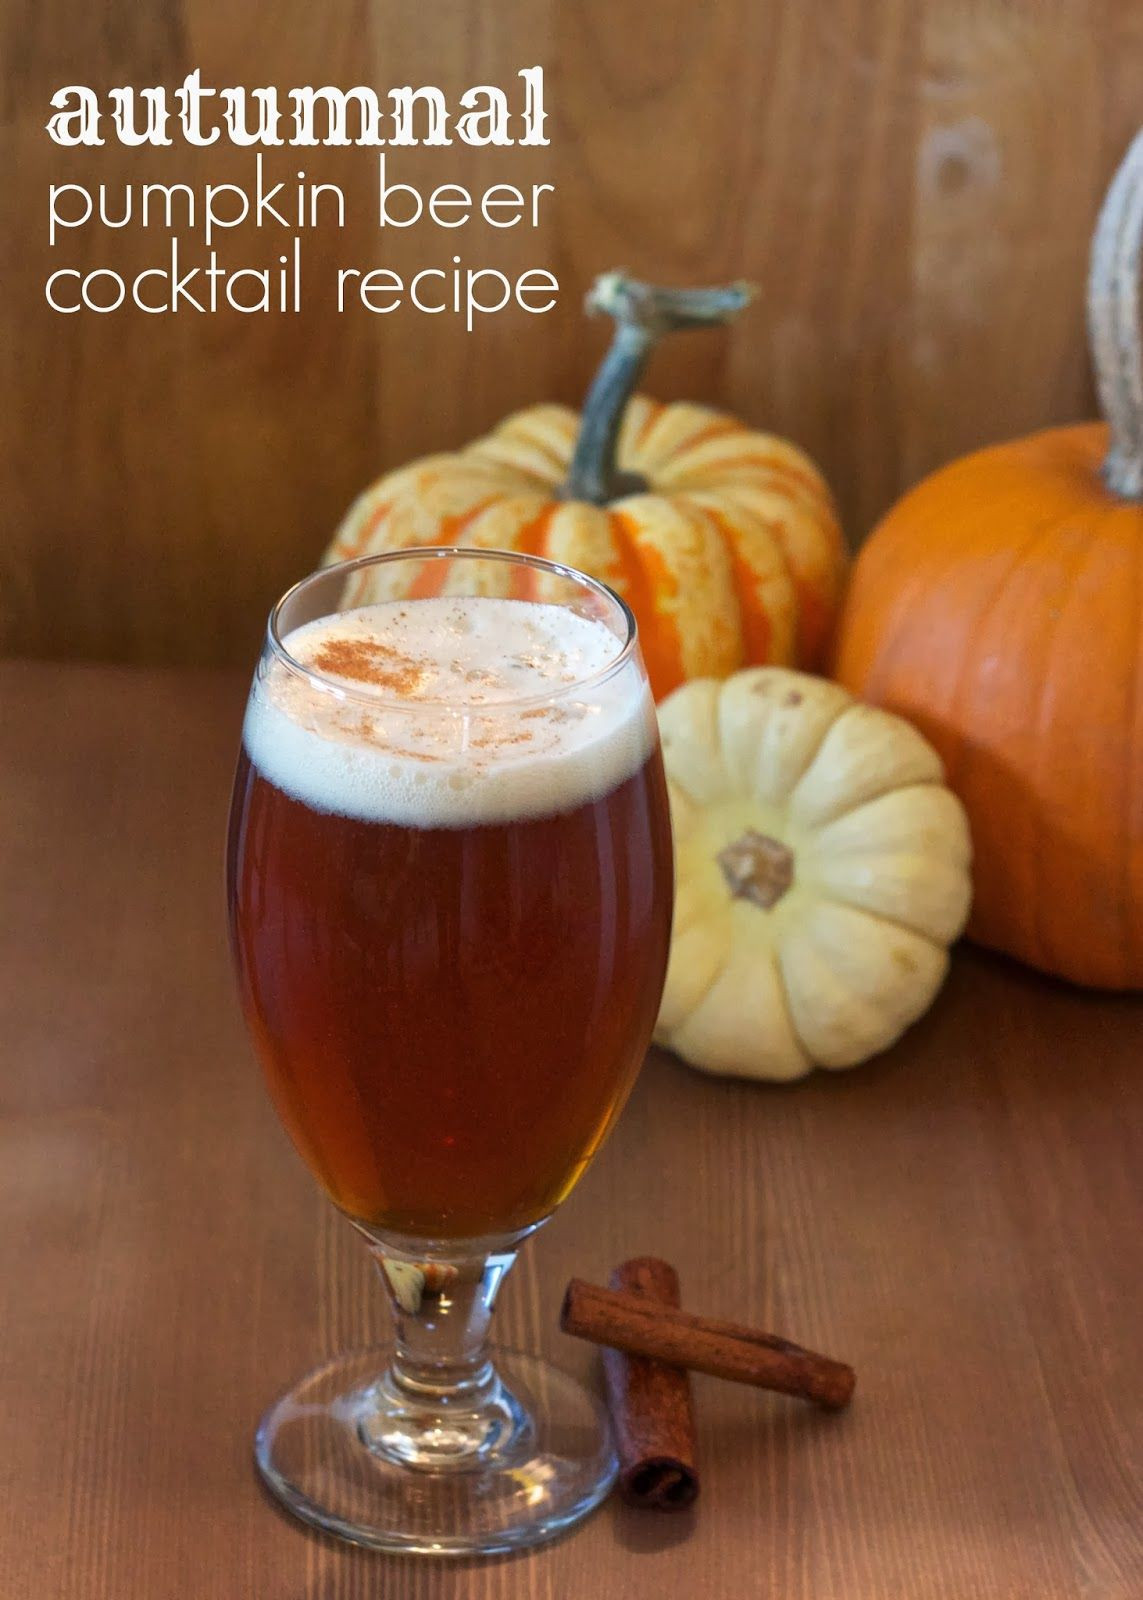 Pumpkin Beer Cocktails
 handmade monday recipe pumpkin beer cocktail recipe